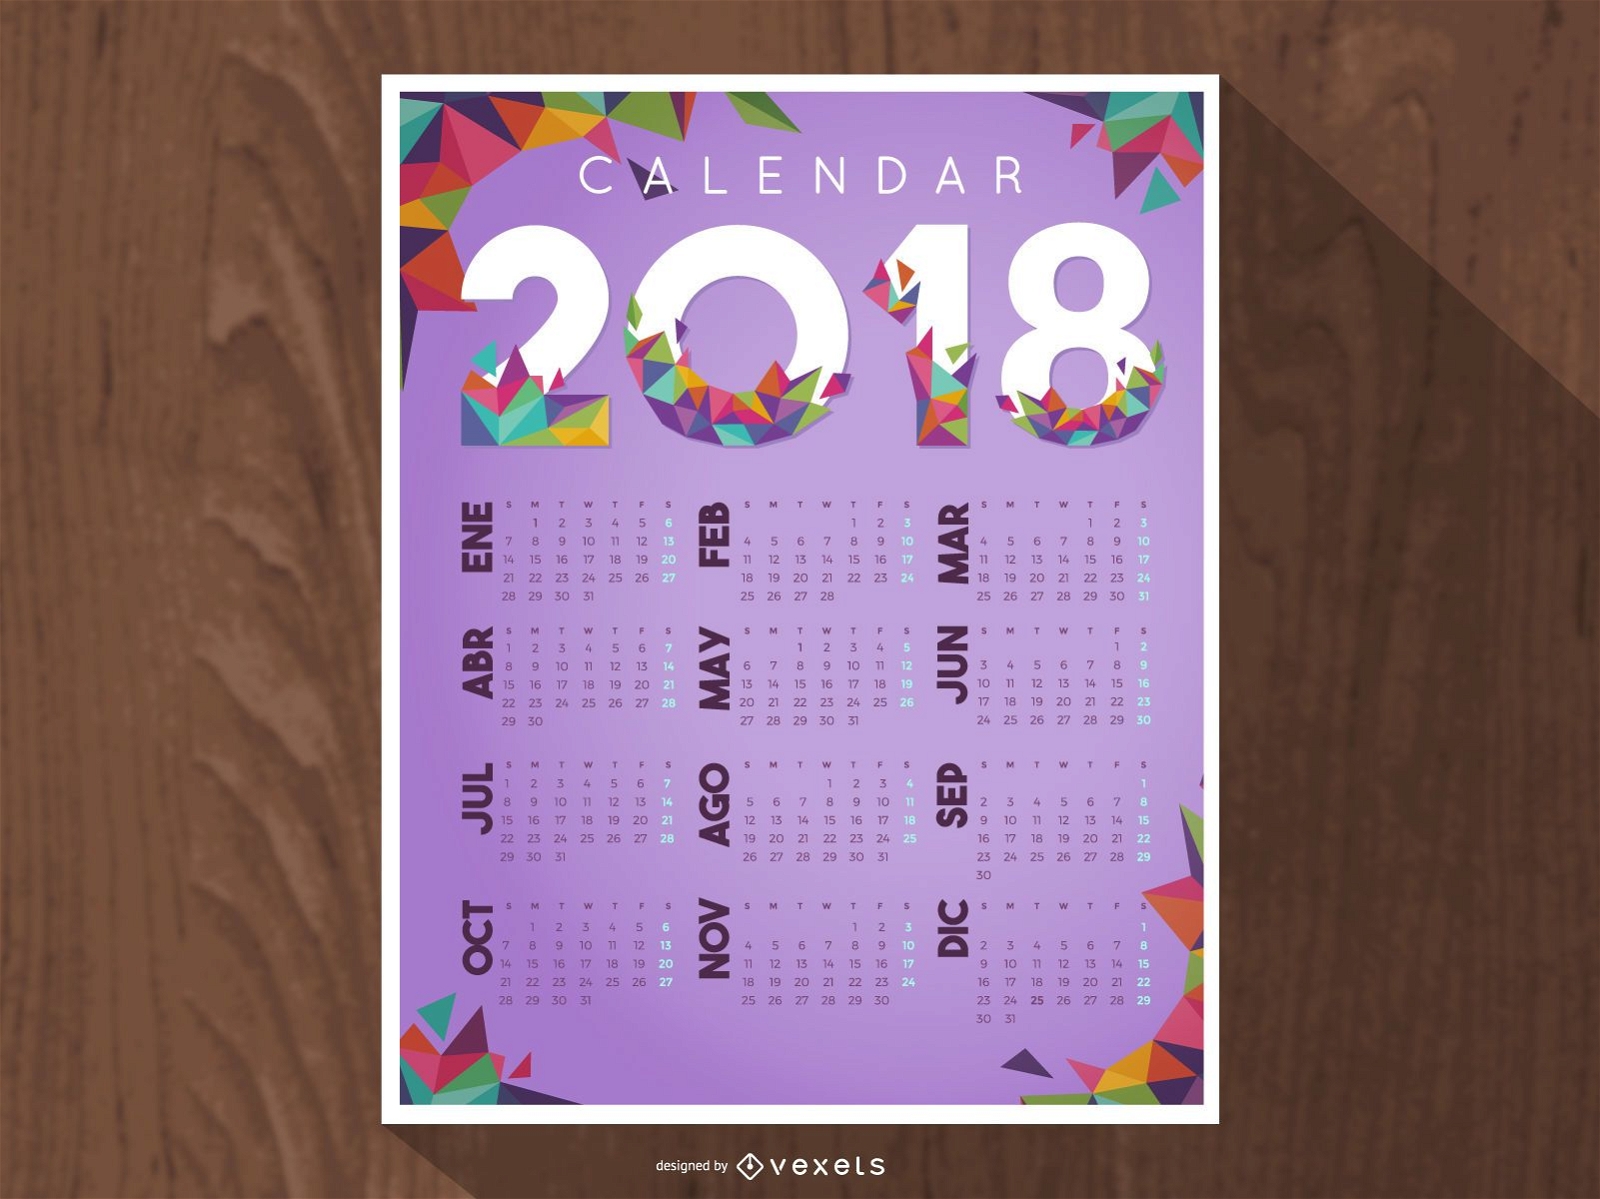 Diseño de calendario 2018 con polígonos.